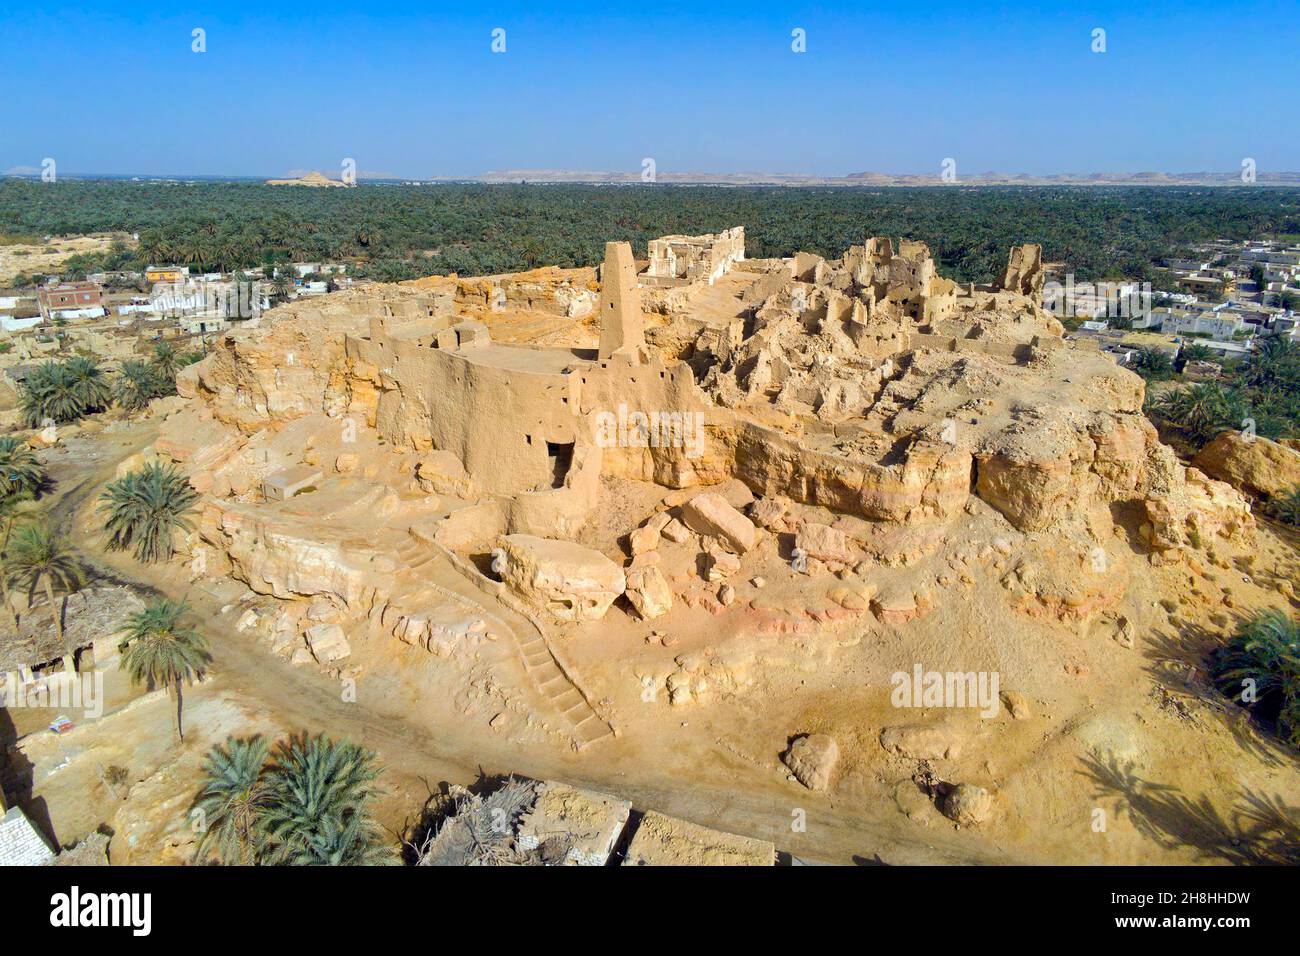 Égypte, désert libyen, gouvernorat de Marsa Matruh, oasis de Siwa, première capitale du rocher d'Aghurmi de Siwa et site de l'oracle de dieu Amon (vue aérienne) Banque D'Images